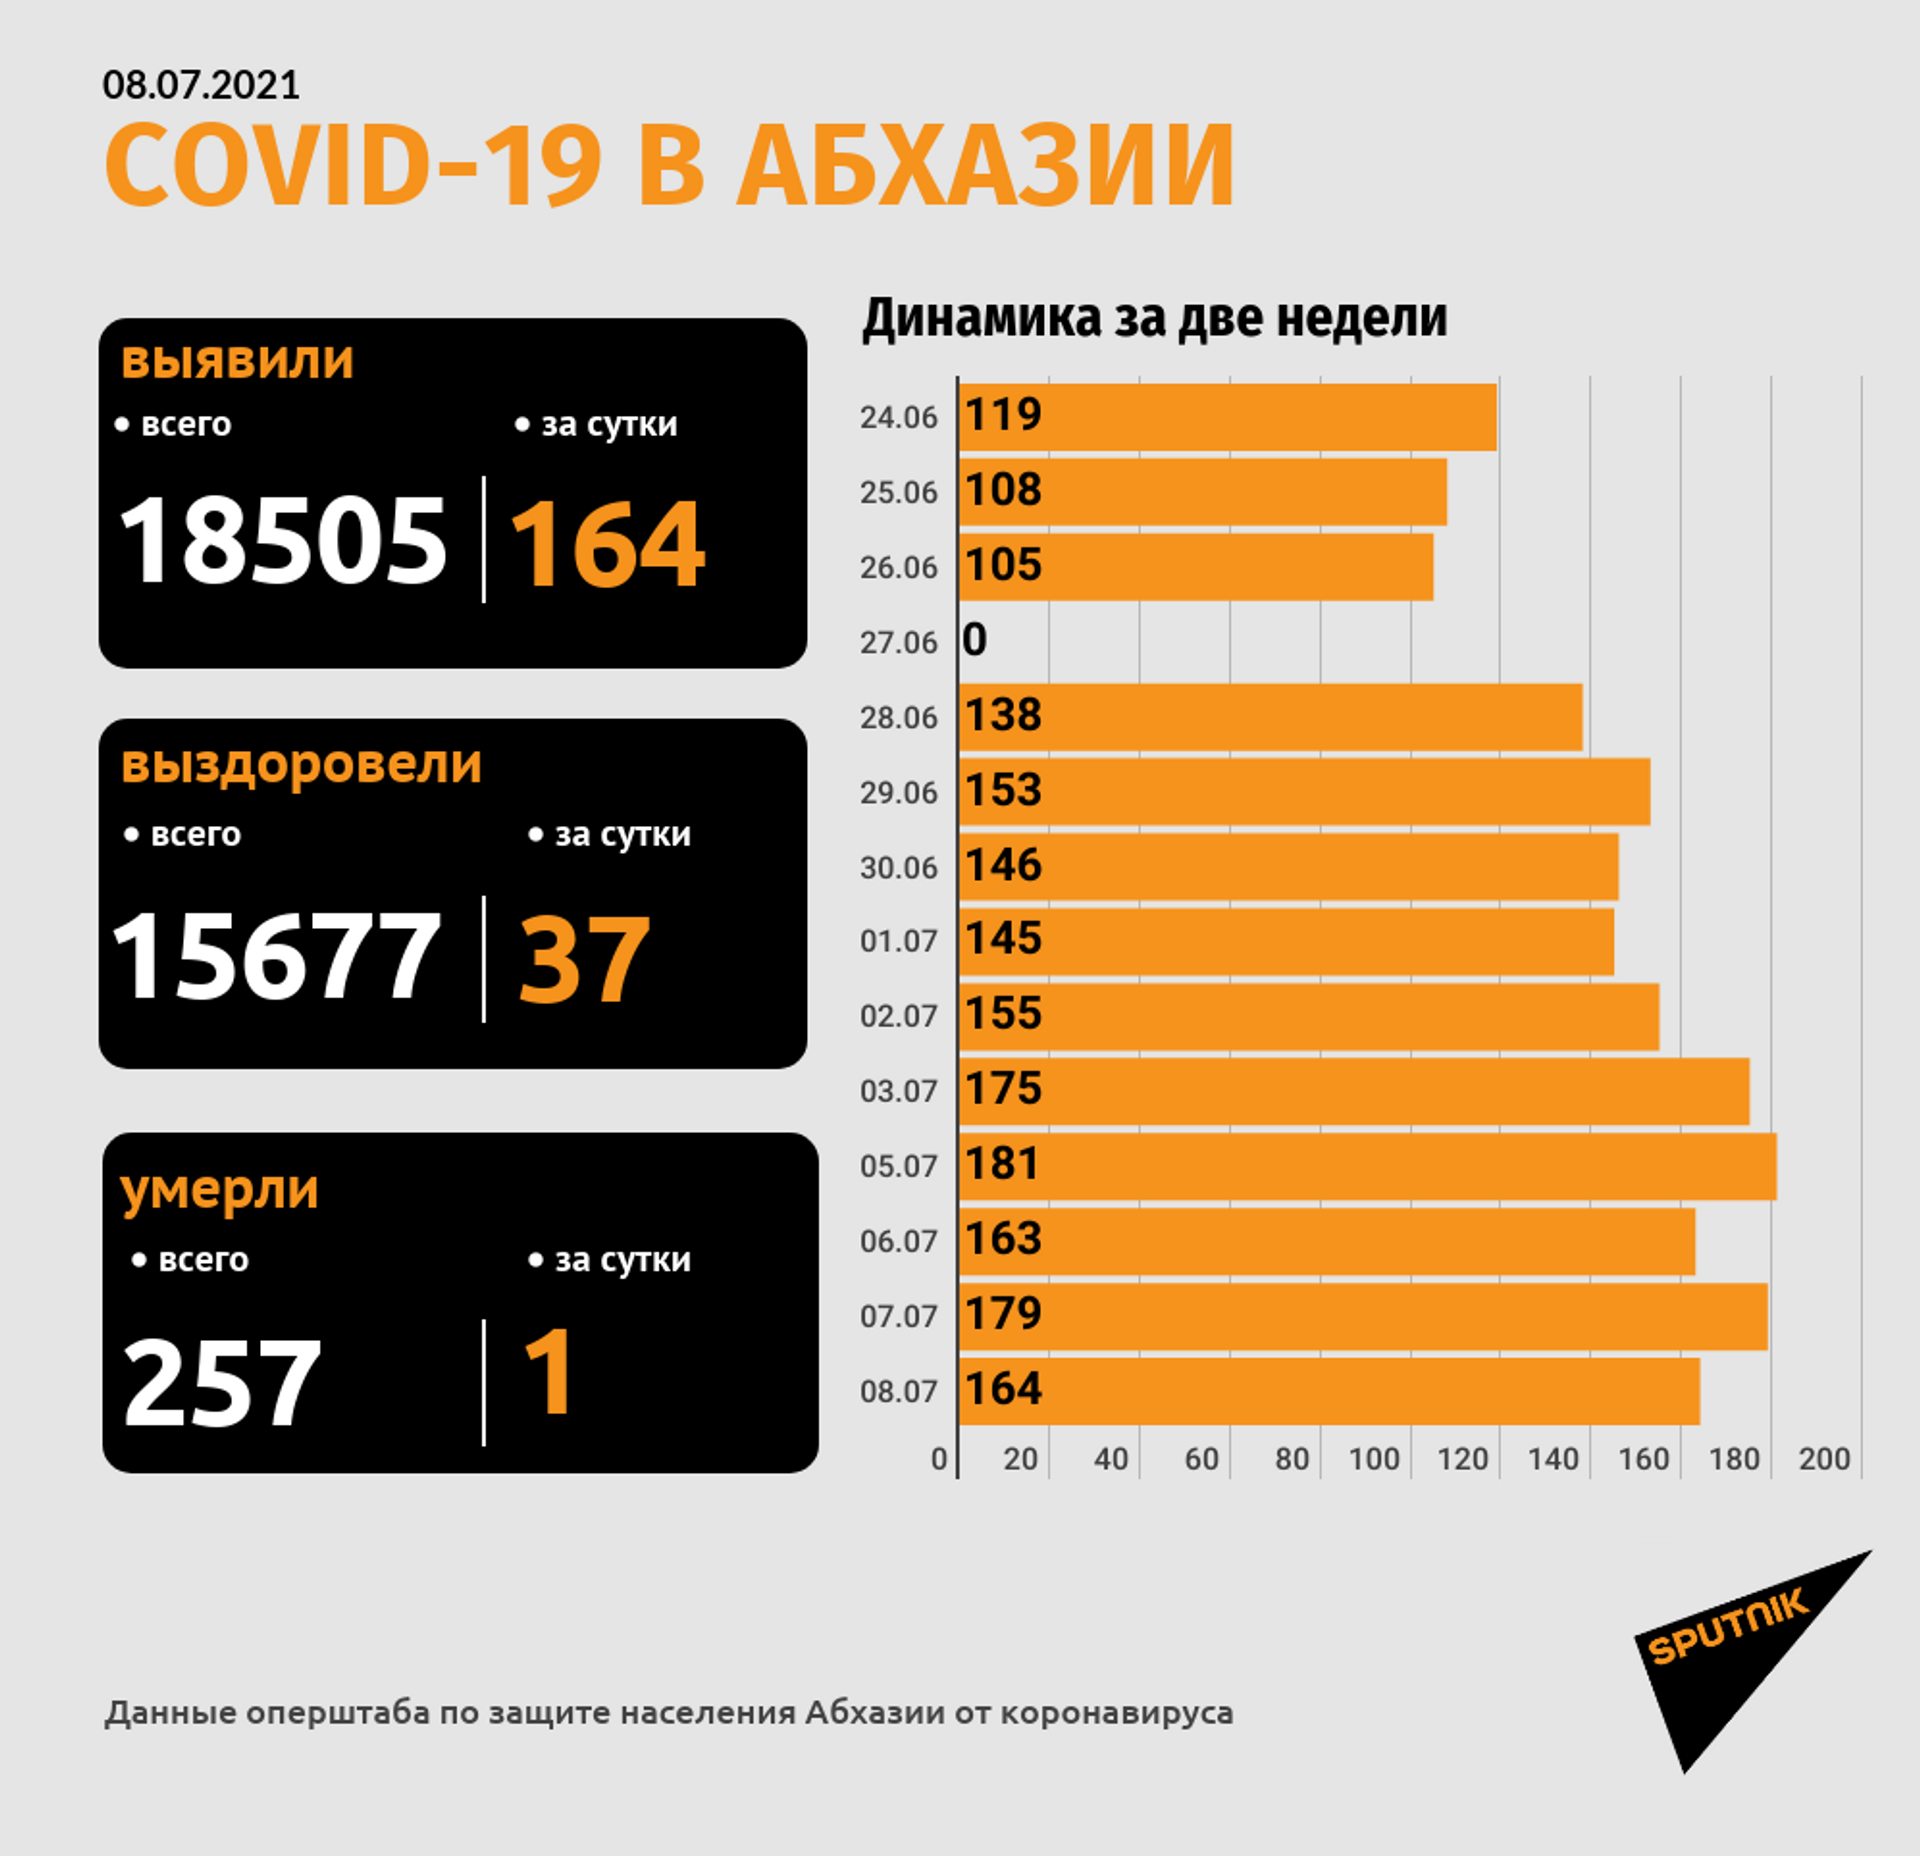 Число смертей пациентов с COVID-19 достигло 257 в Абхазии - Sputnik Абхазия, 1920, 08.07.2021